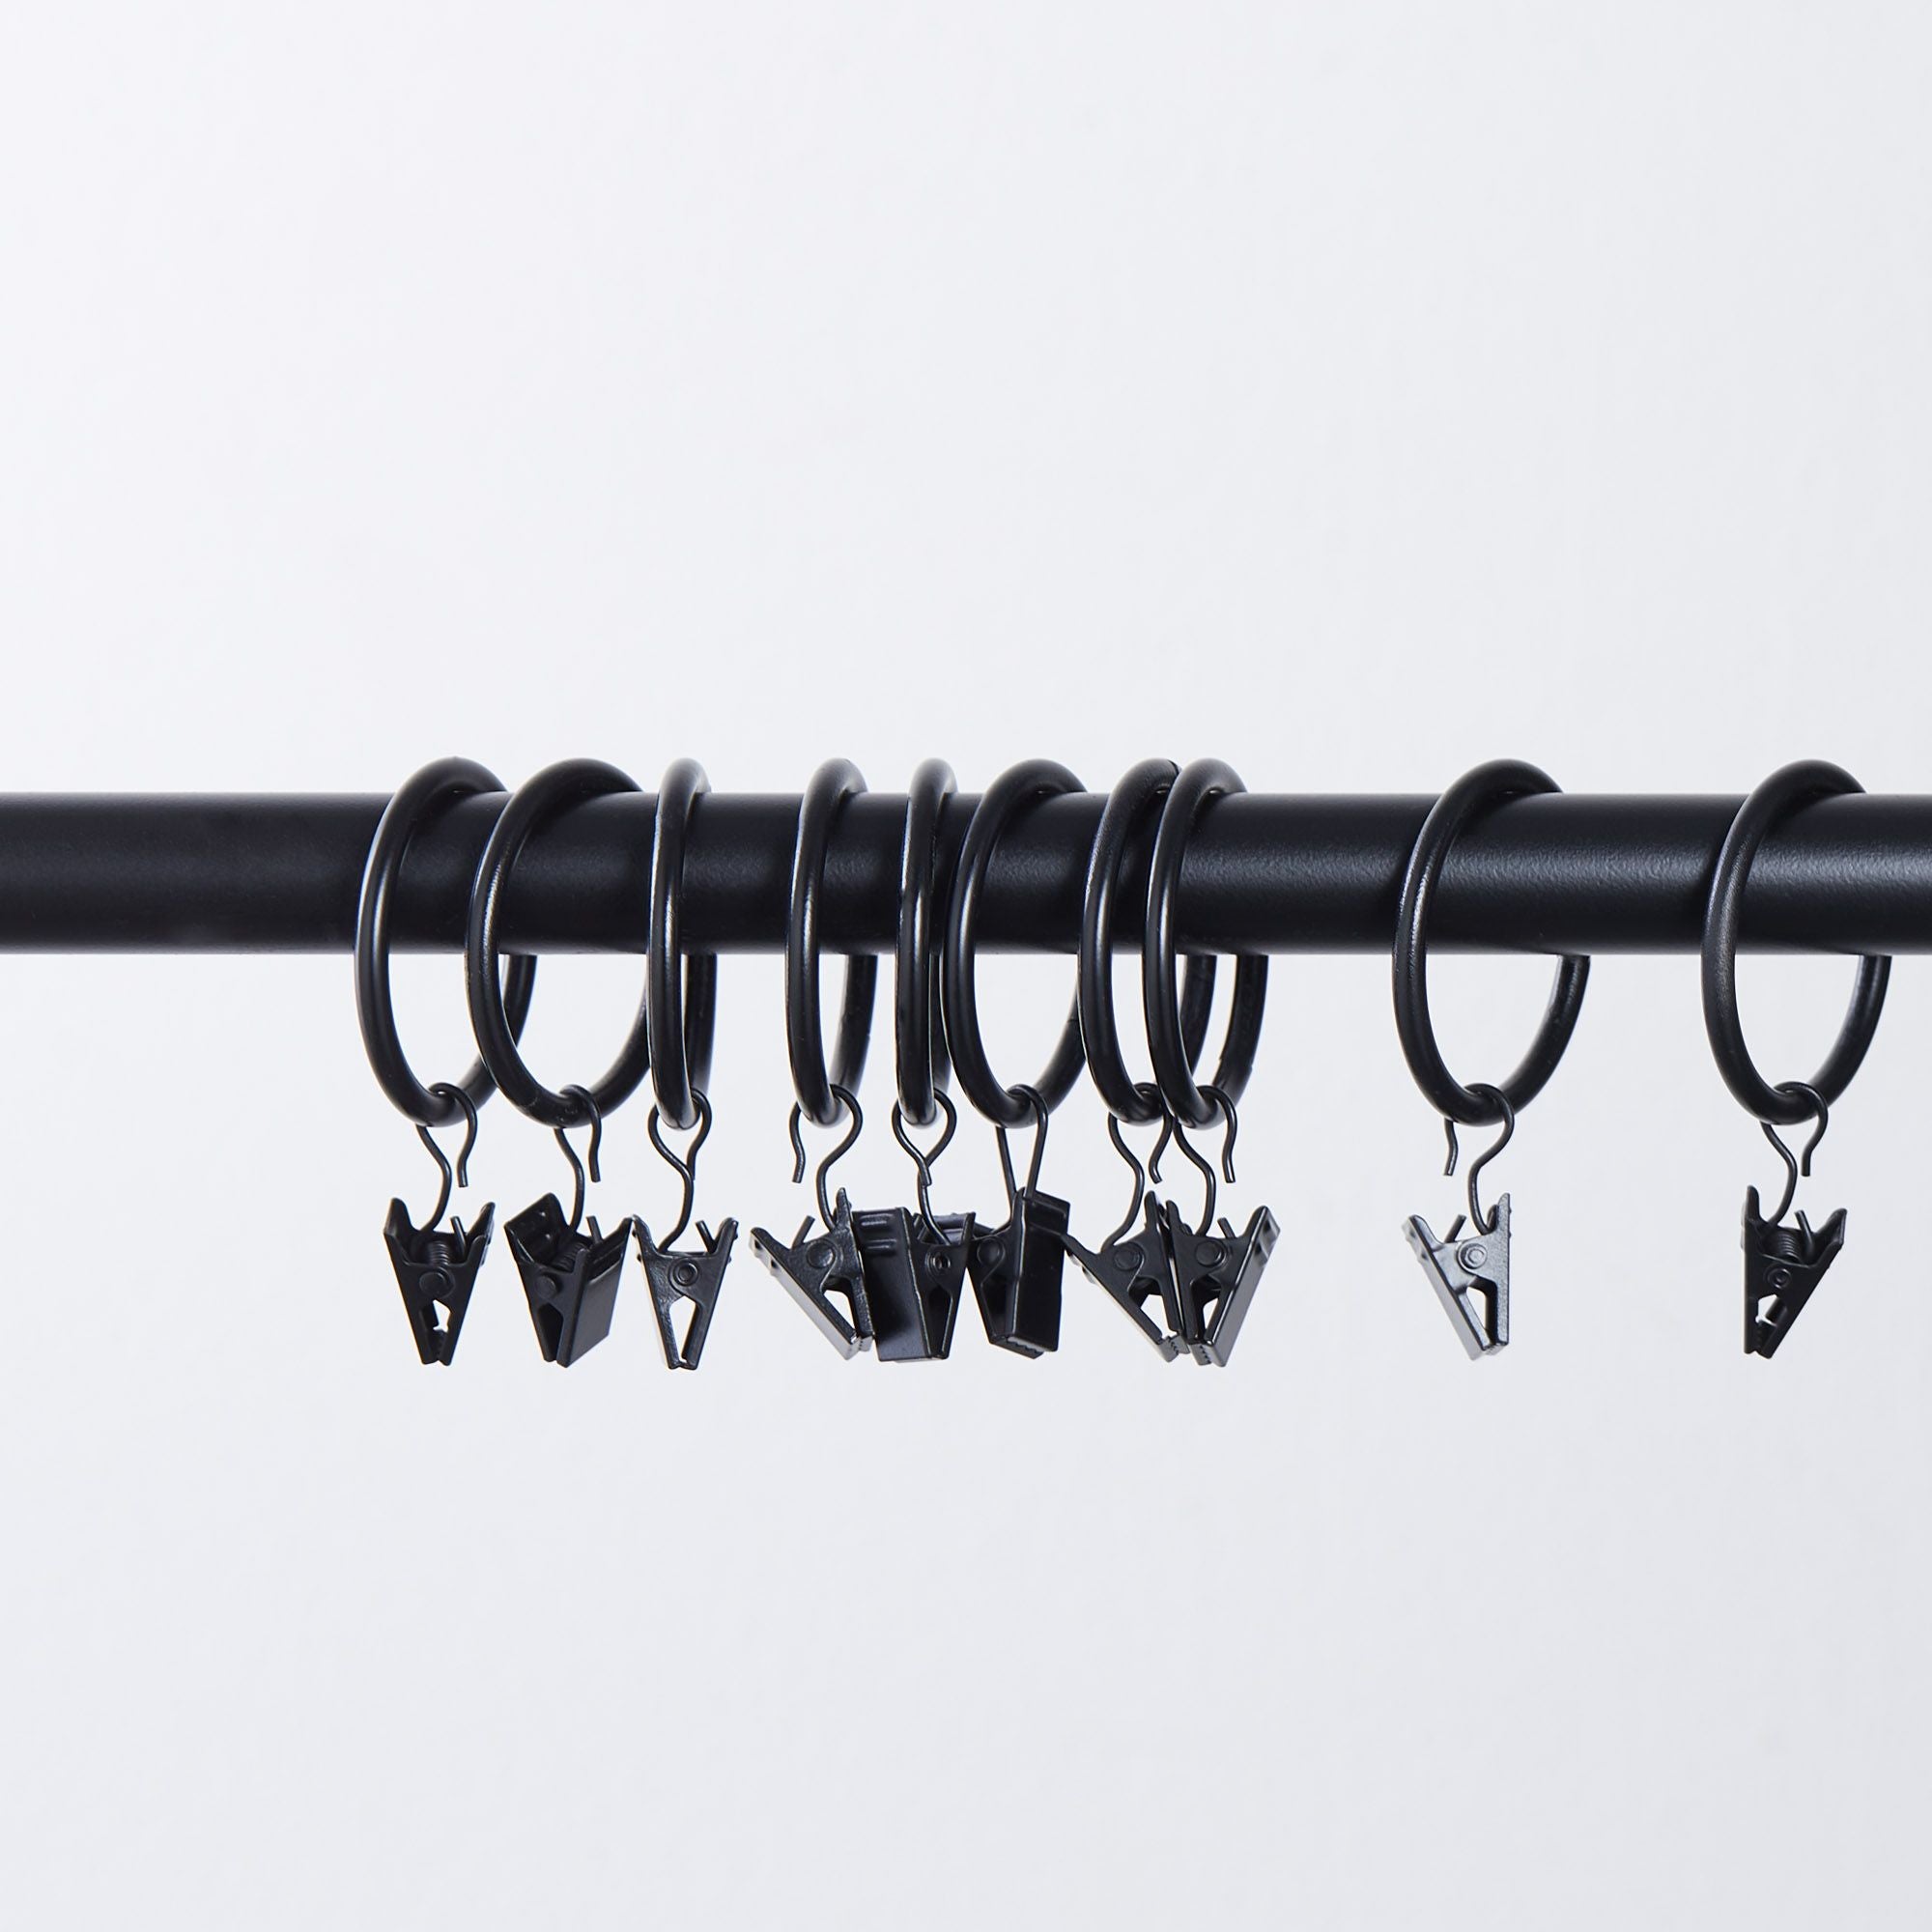 Crochets PVC pour anneaux de tringle à rideaux - Lot de 10 crochets -  Agrafes pour anneaux à rideau